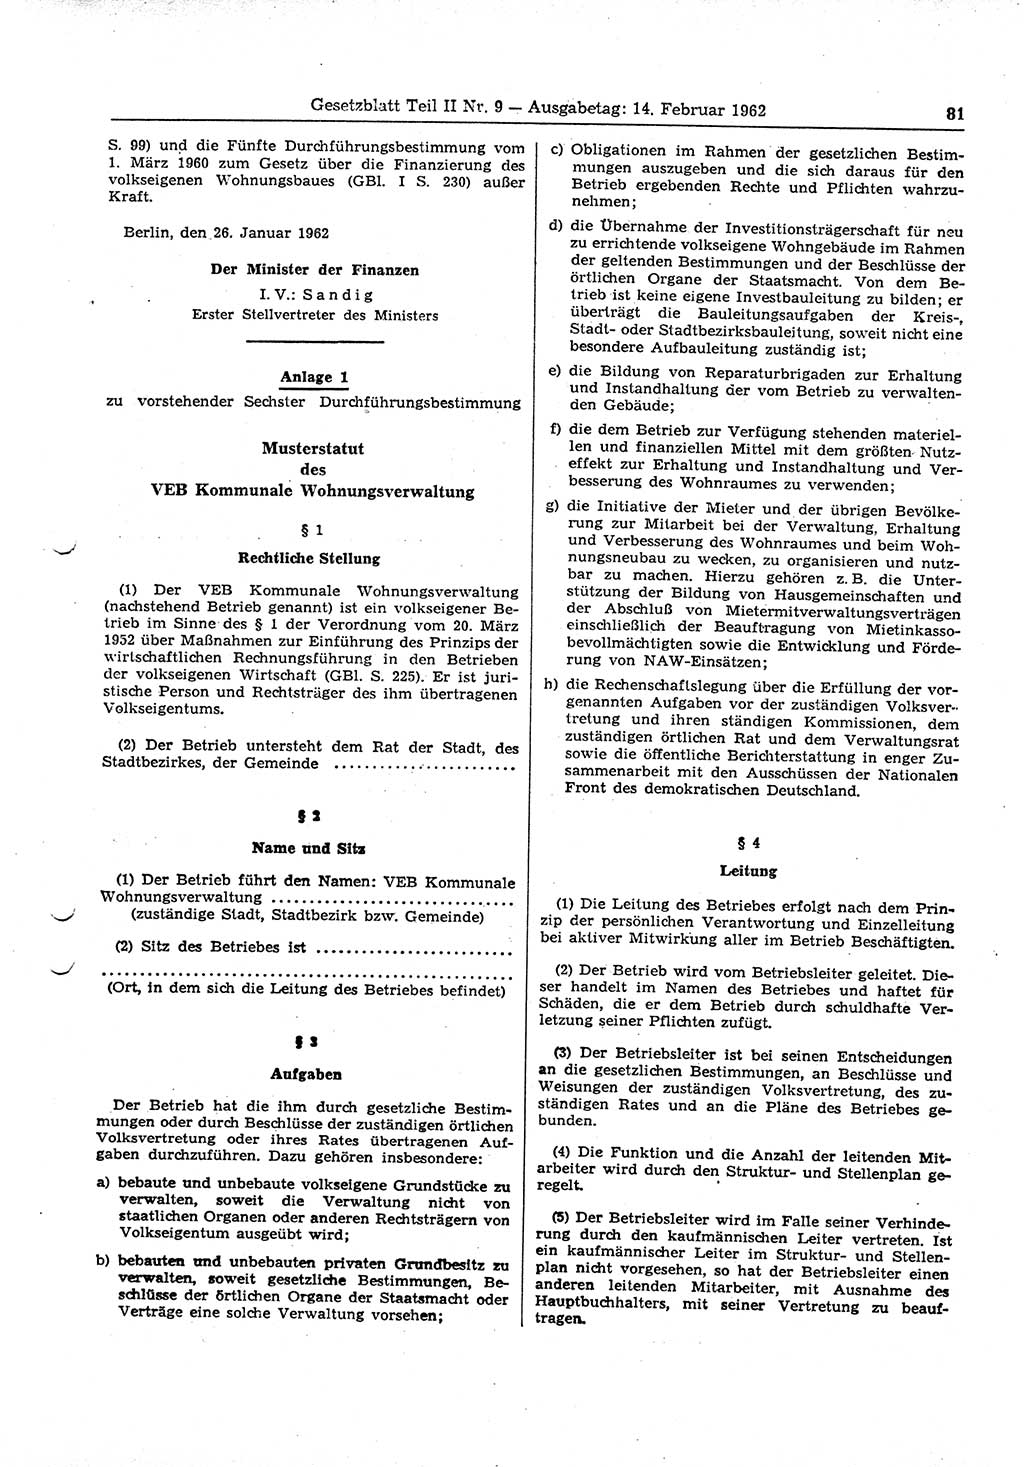 Gesetzblatt (GBl.) der Deutschen Demokratischen Republik (DDR) Teil ⅠⅠ 1962, Seite 81 (GBl. DDR ⅠⅠ 1962, S. 81)